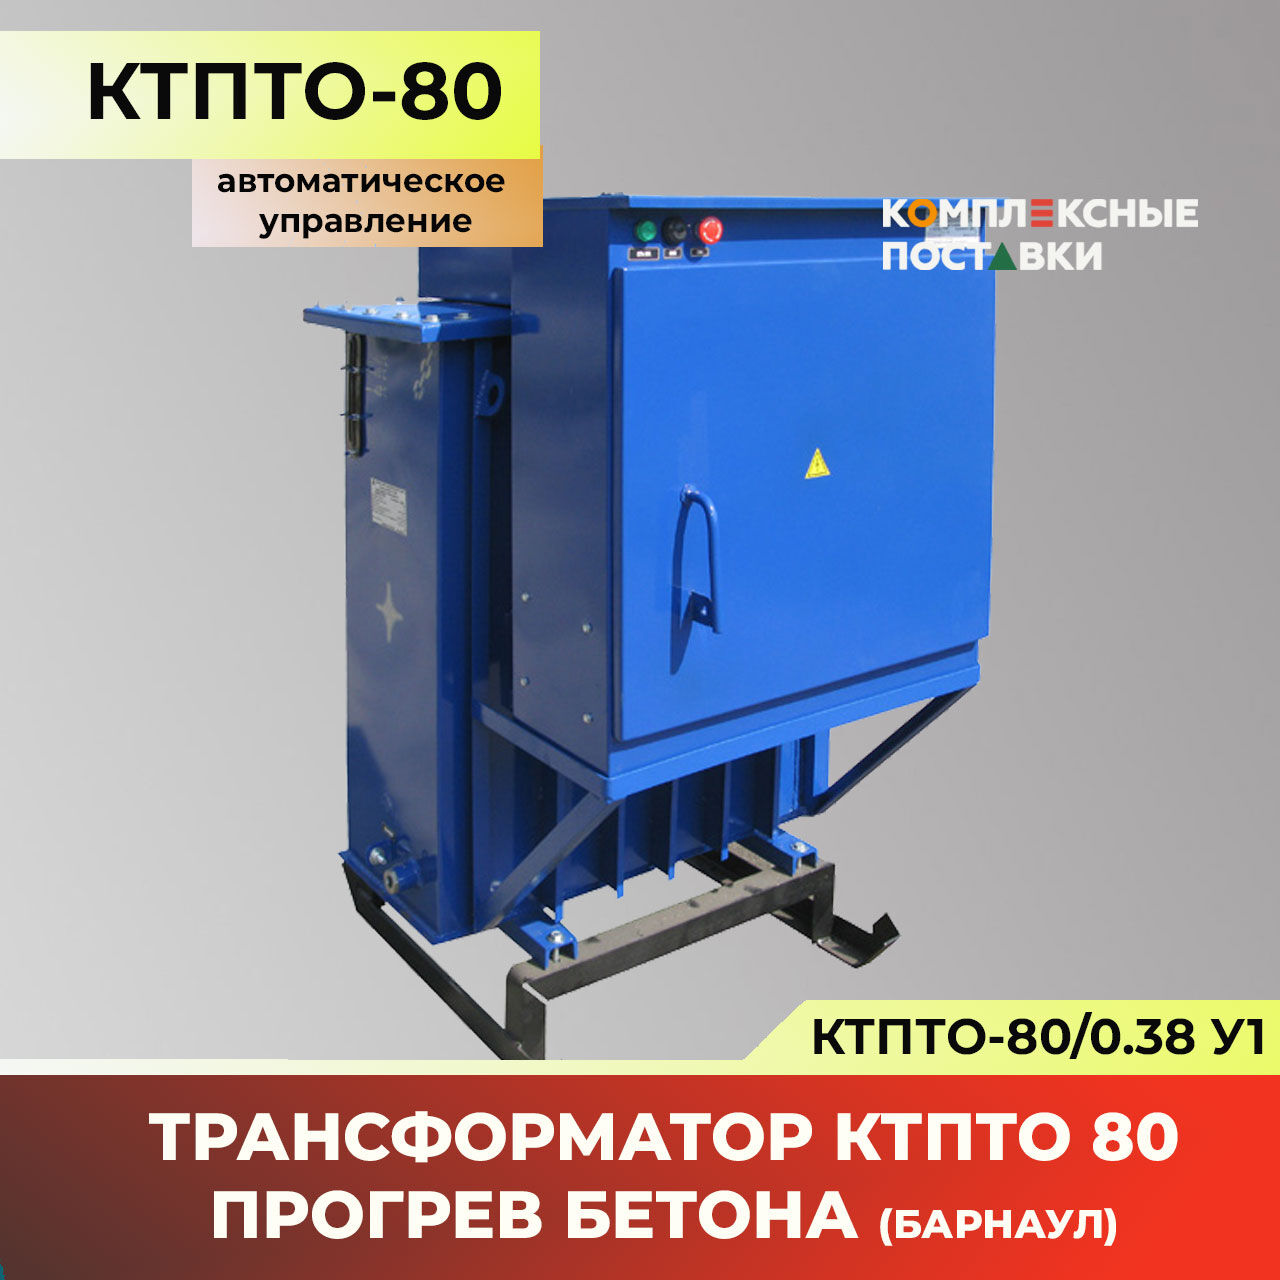 Трансформатор для прогрева бетона КТПТО-80 Барнаул (Автоматическое управление)